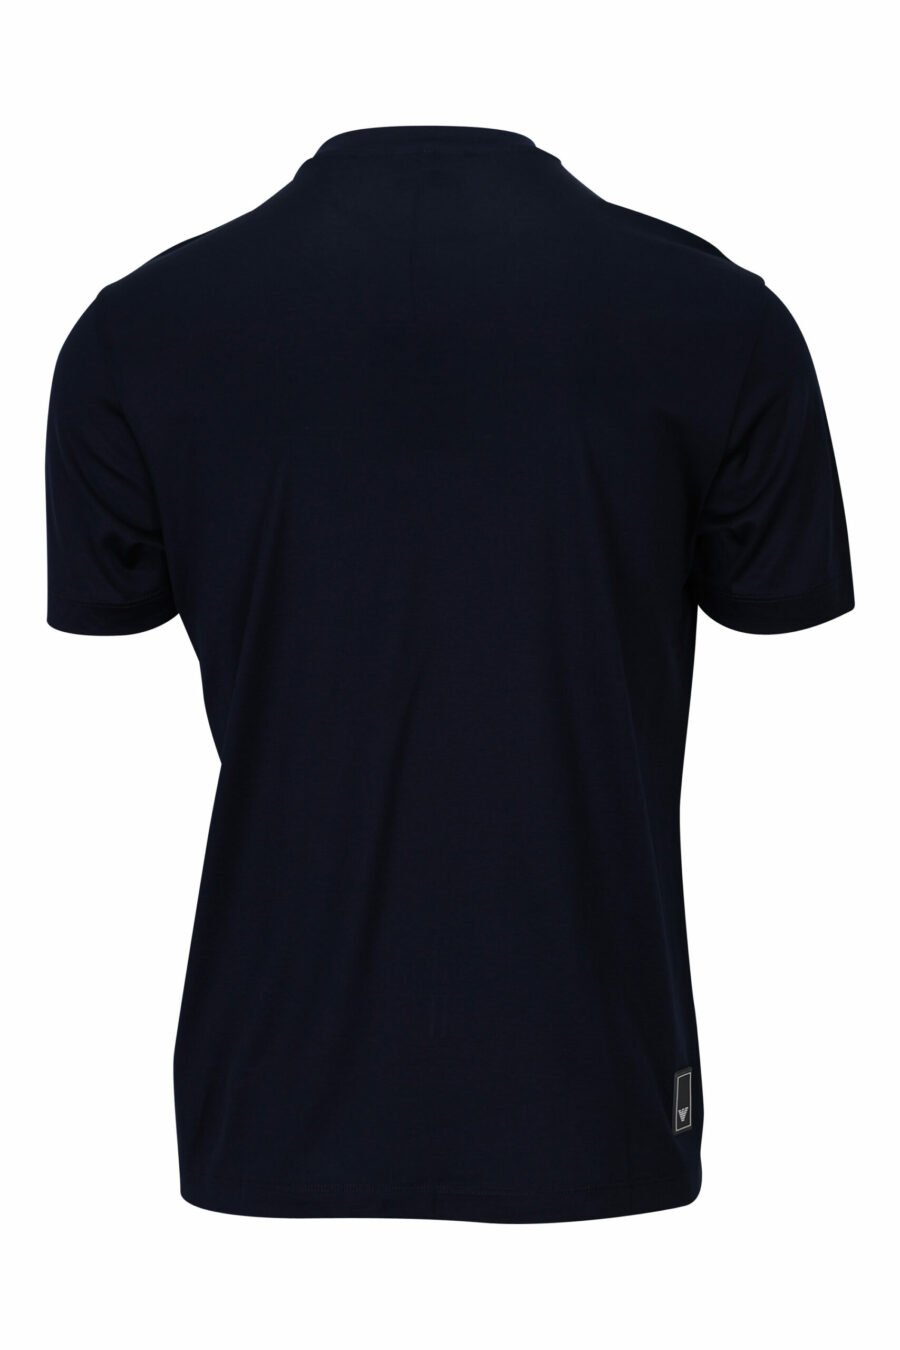 Marineblaues T-Shirt mit Adler-Minilogie - 8057767732455 1 skaliert